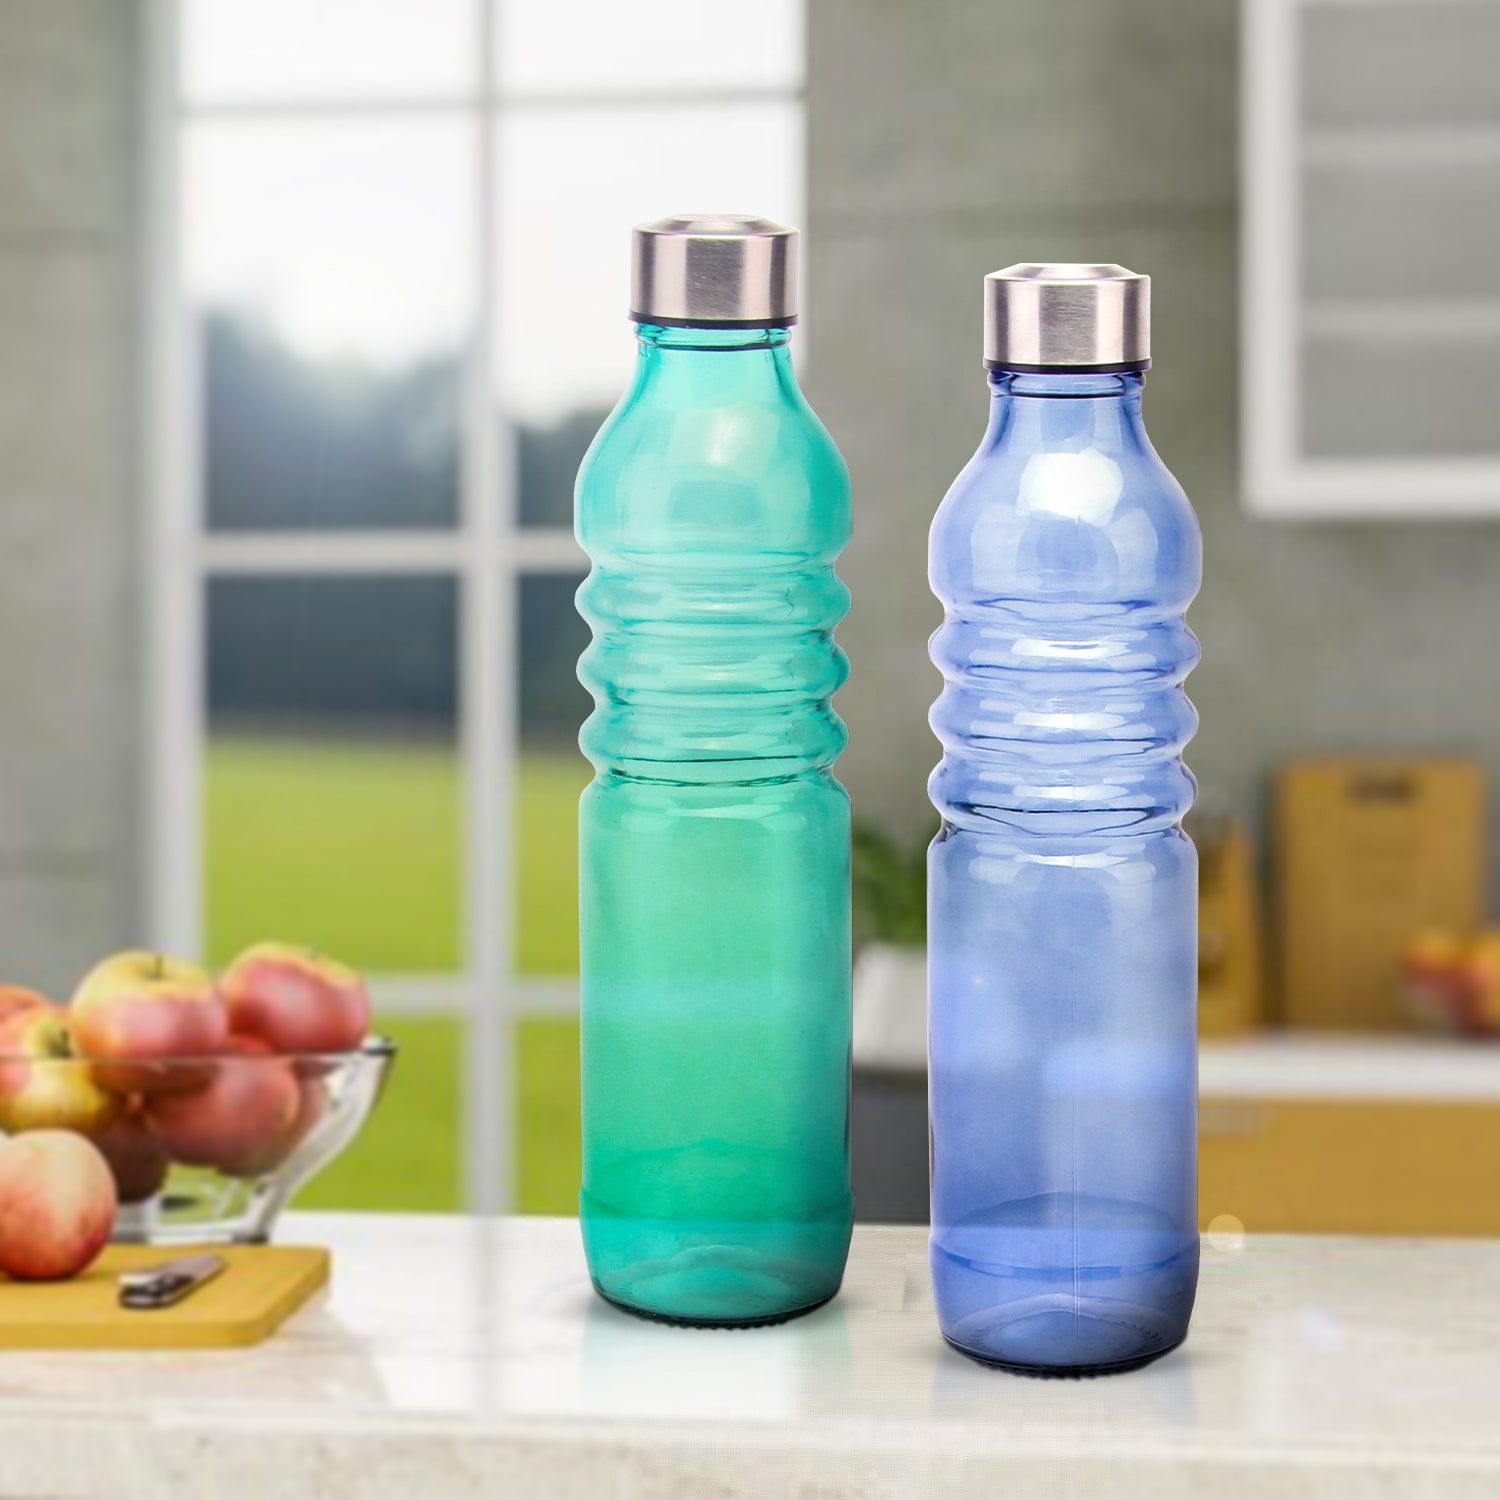 Red Butler Bottles Coloured Glass Bottle 750ml | 2pcs Set | Green & Blue DGBT75A3 Redbutler